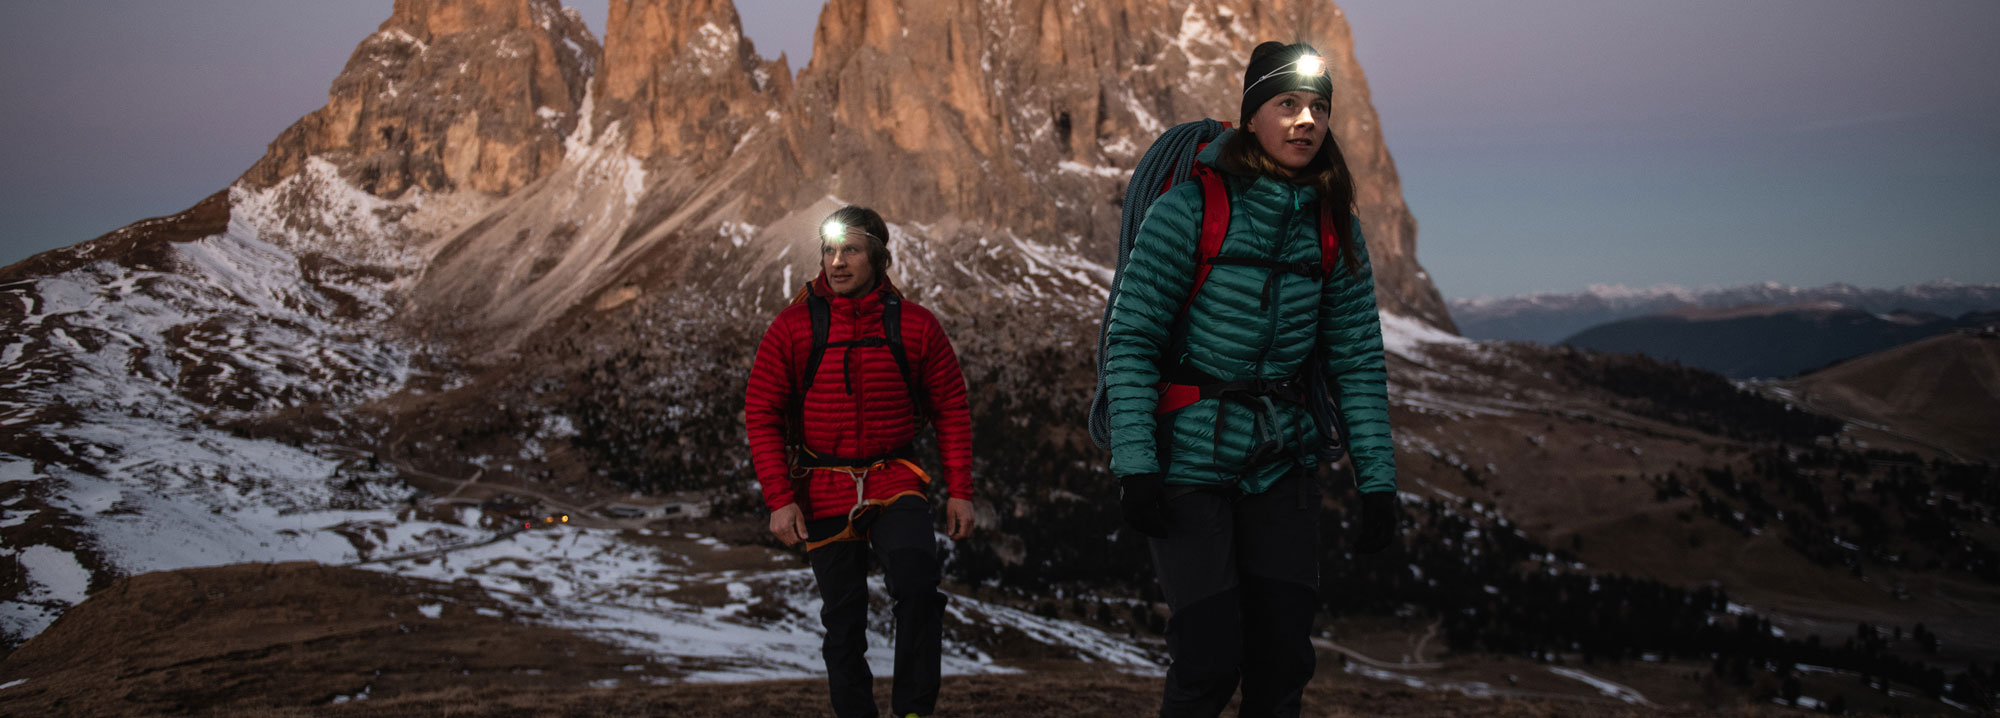 انتخاب بهترین کاپشن کوهنوردی و روزمره